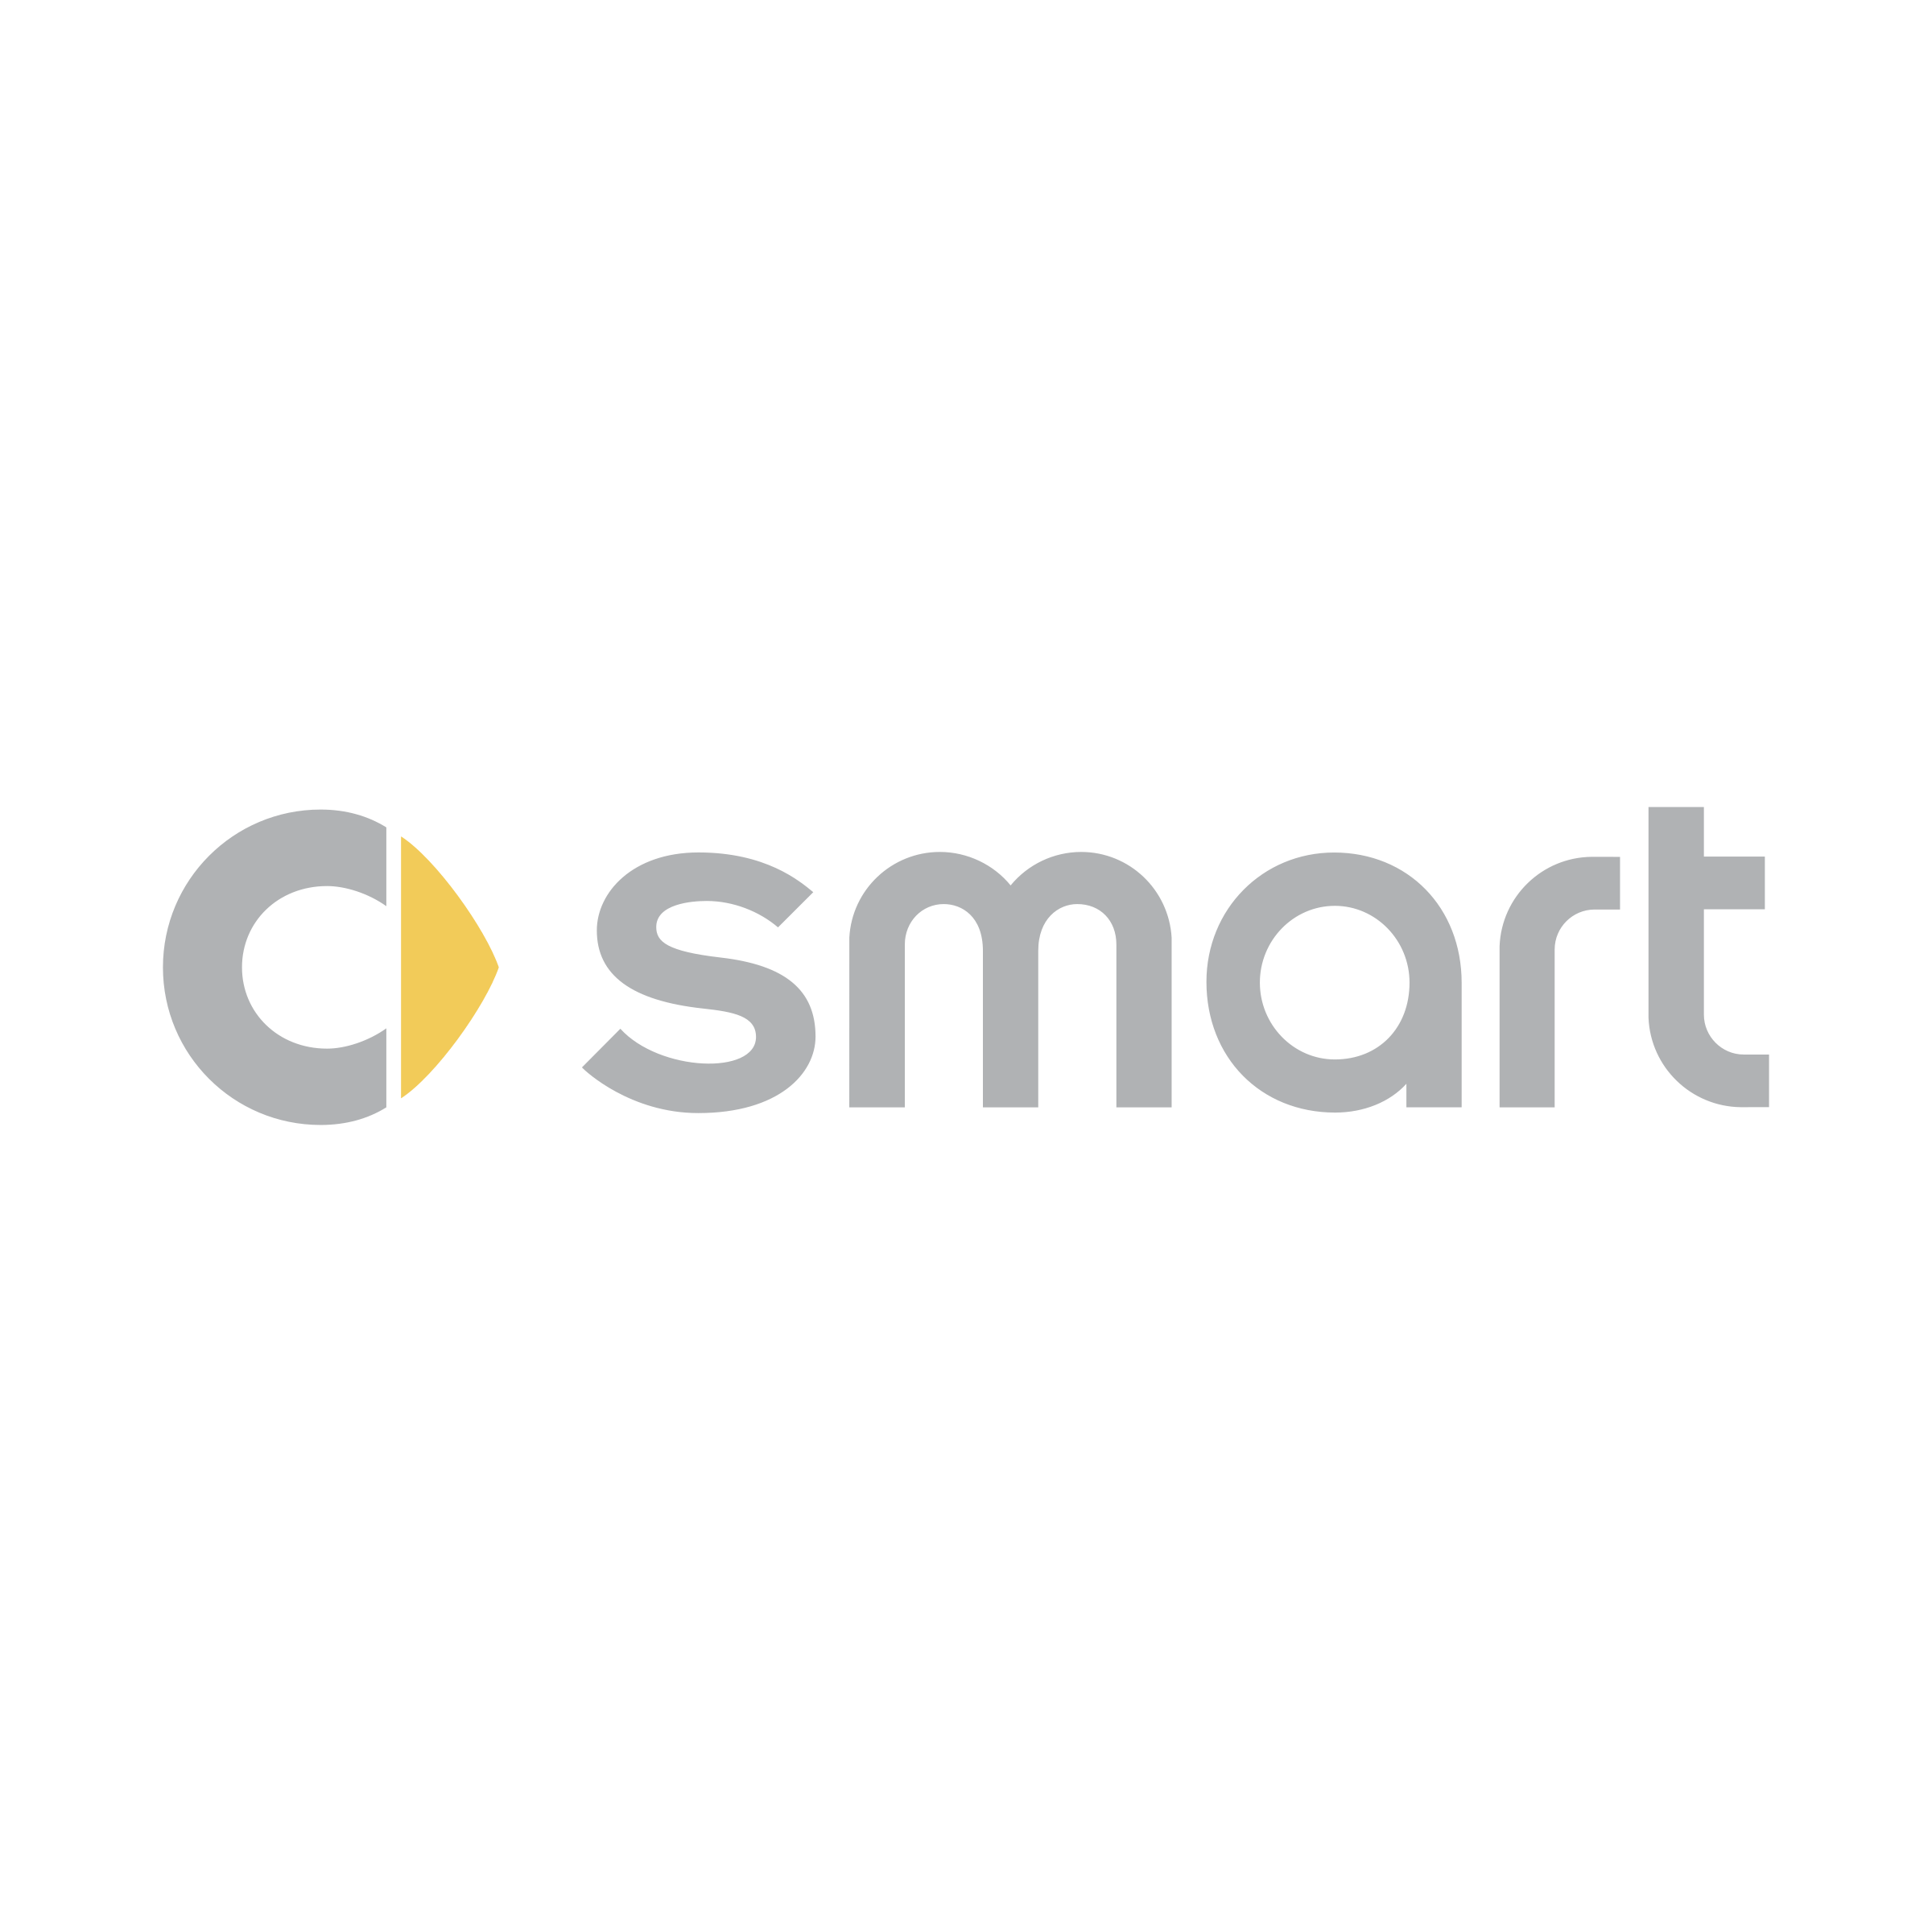 Smart Logo - Smart Logo PNG Transparent & SVG Vector